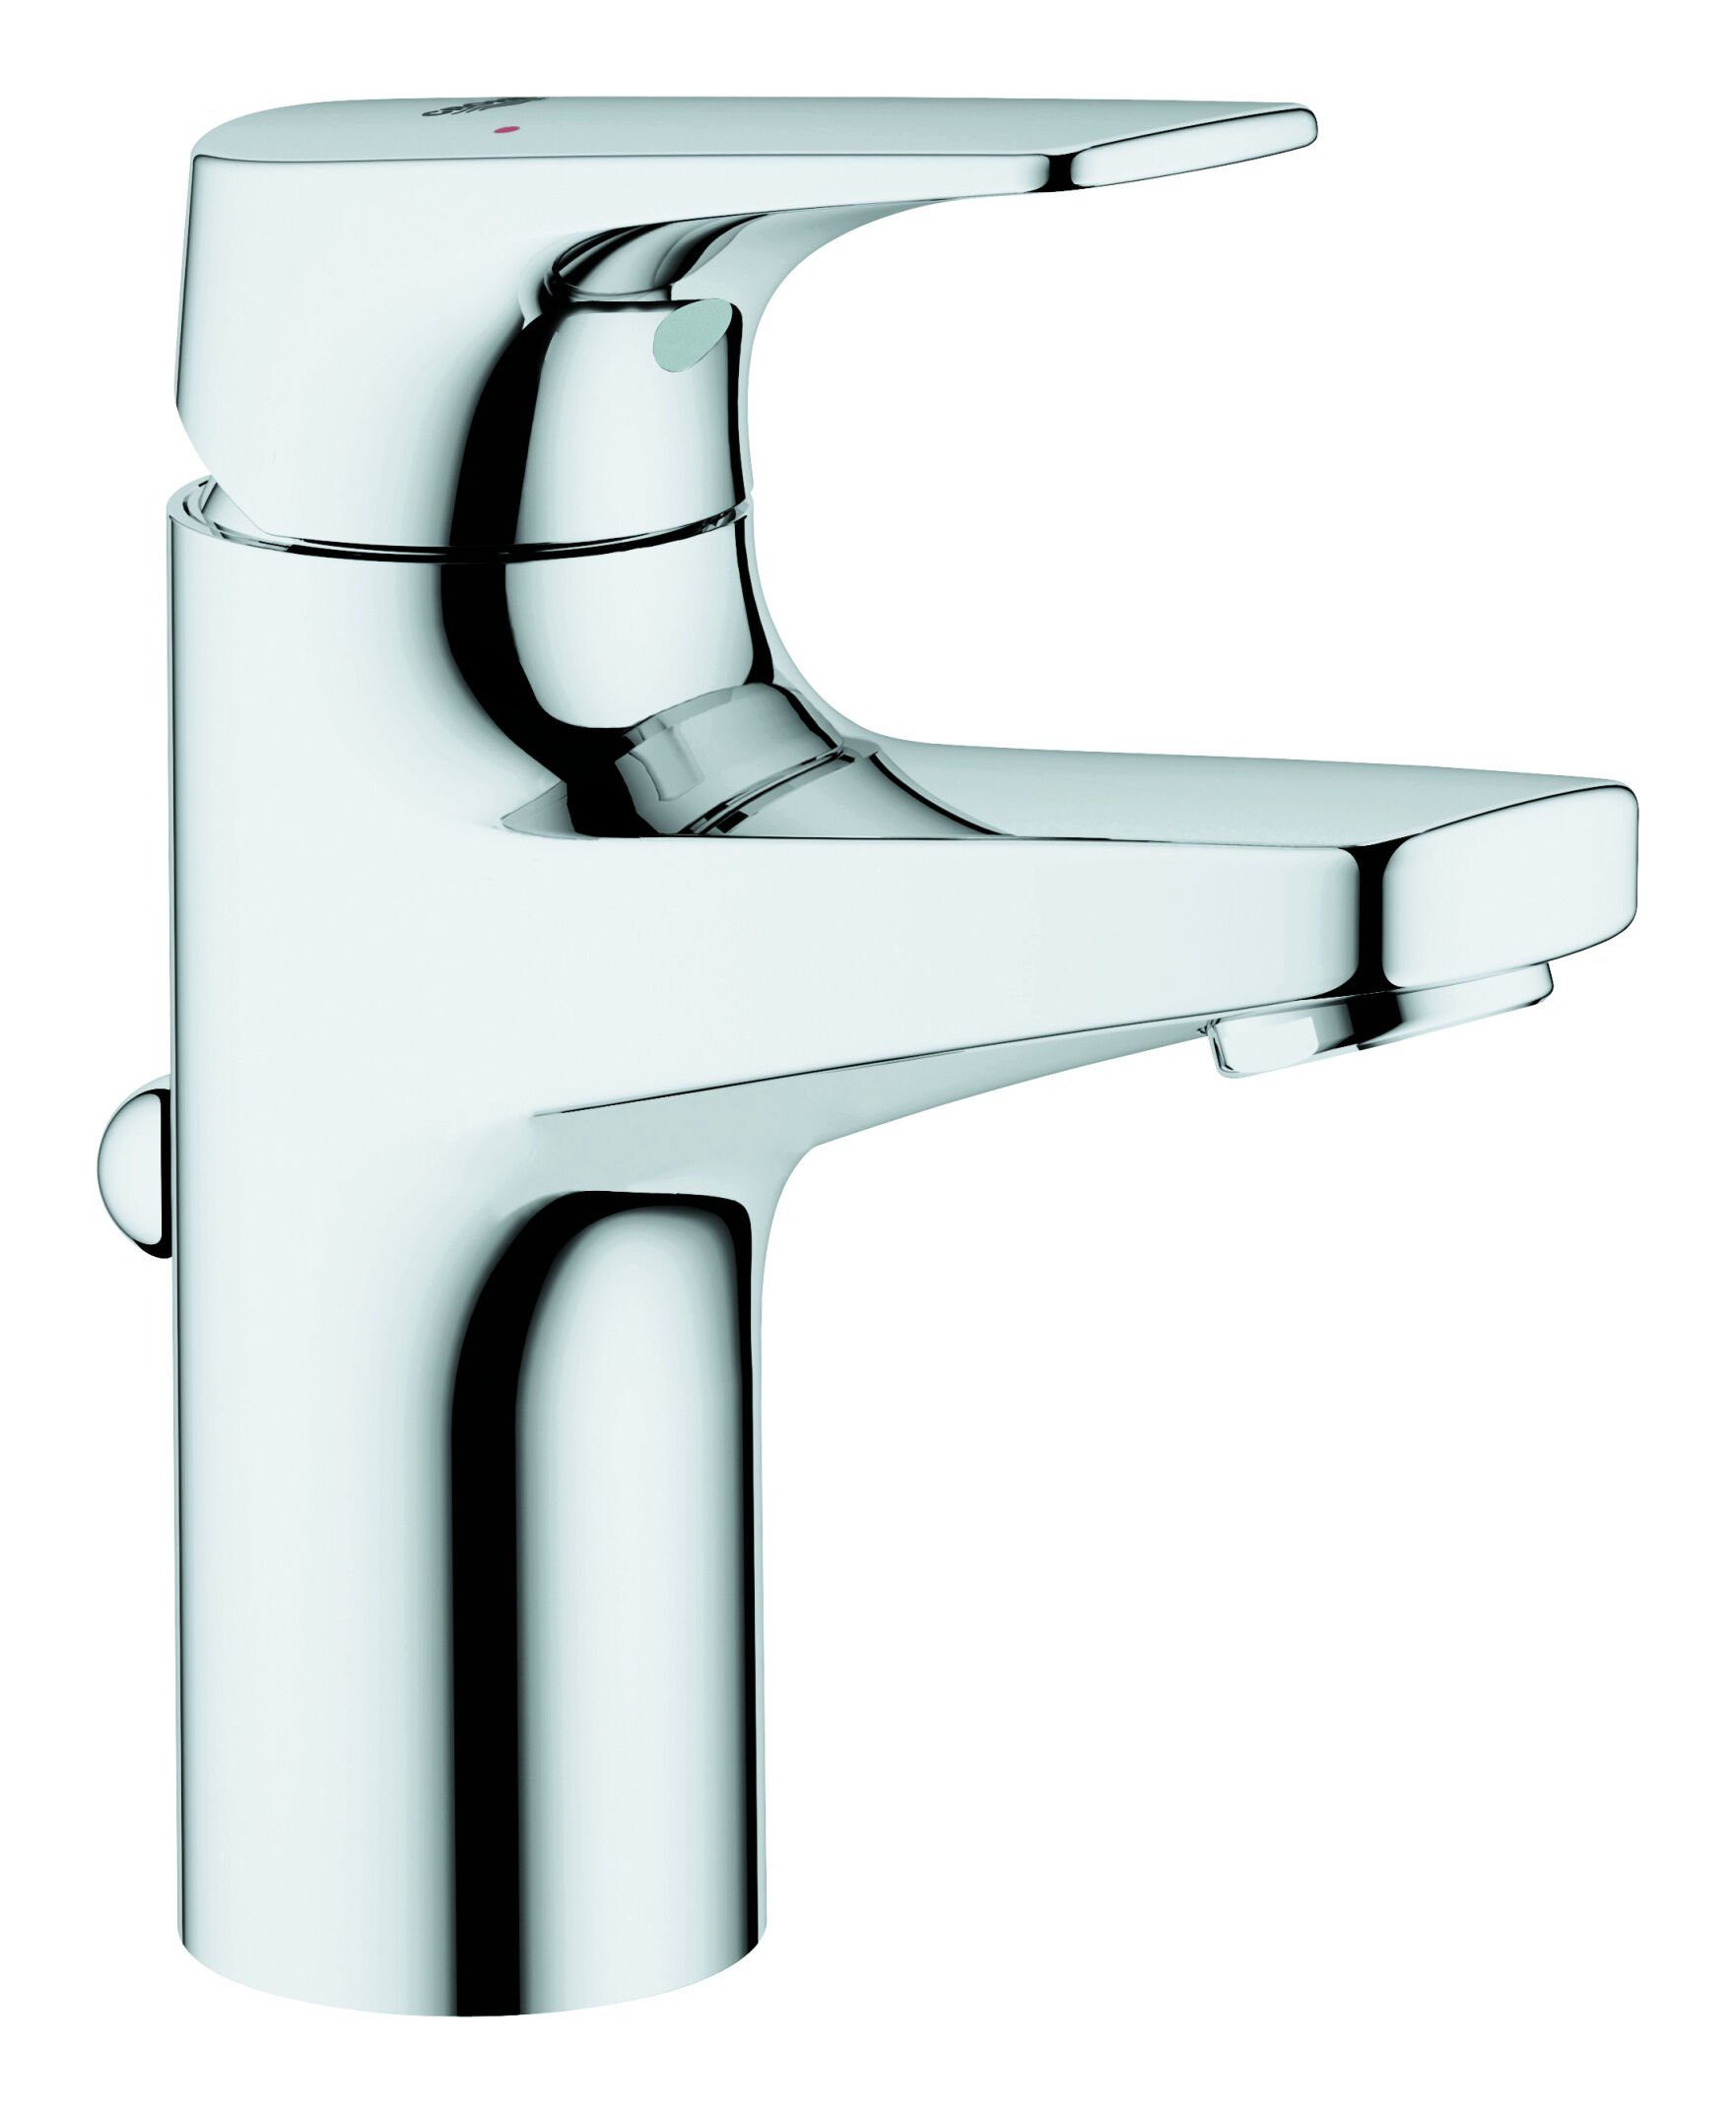 Grohe Waschtischarmatur BauFlow Einhand mit Zugstangen-Ablaufgarnitur S-Size - Chrom | Waschtischarmaturen